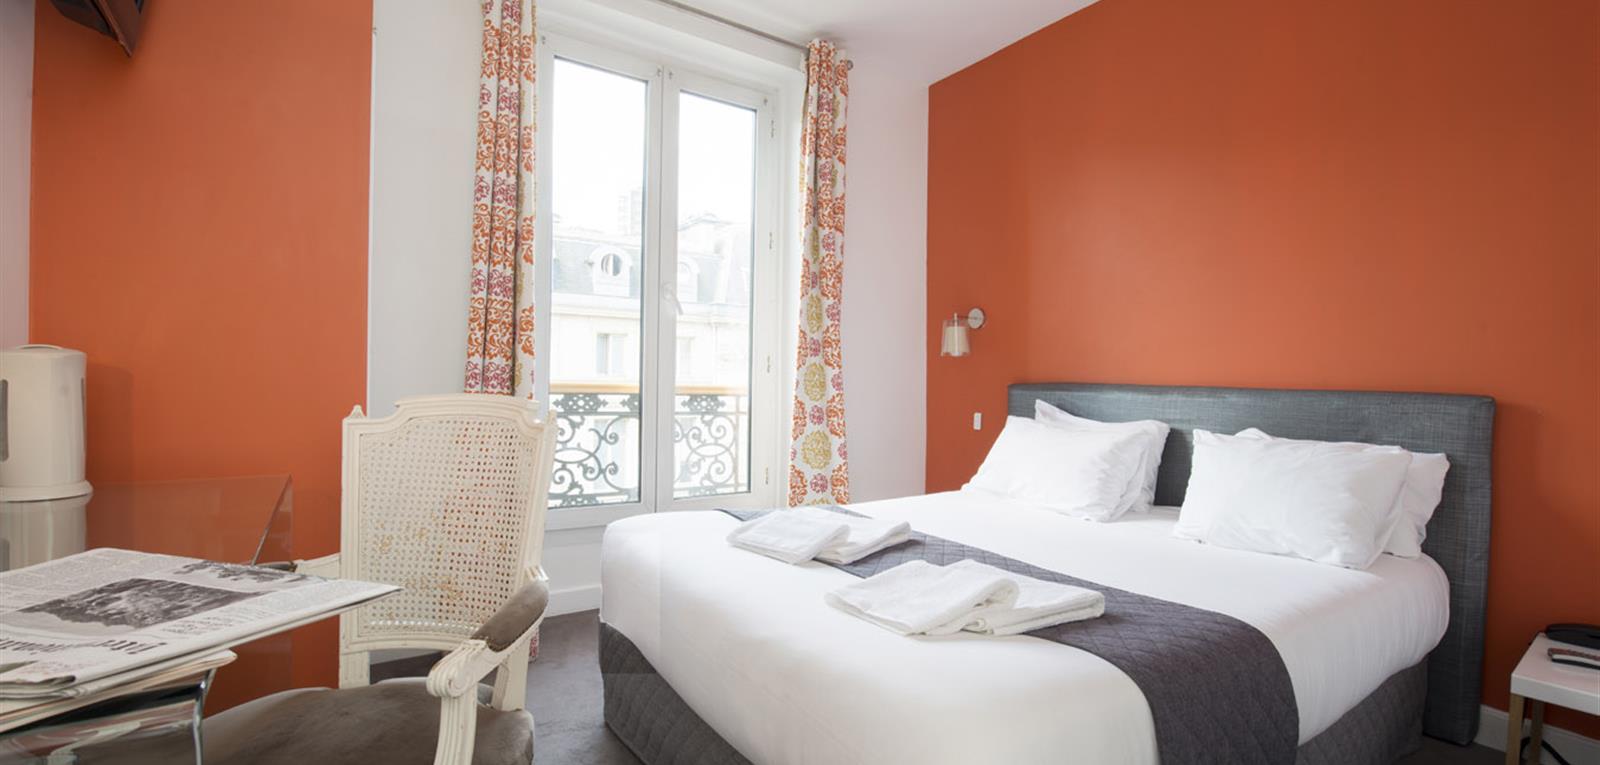 Chambre 2 personnes - Hôtel romantique Paris entre le 1er et le 4e arrondissement